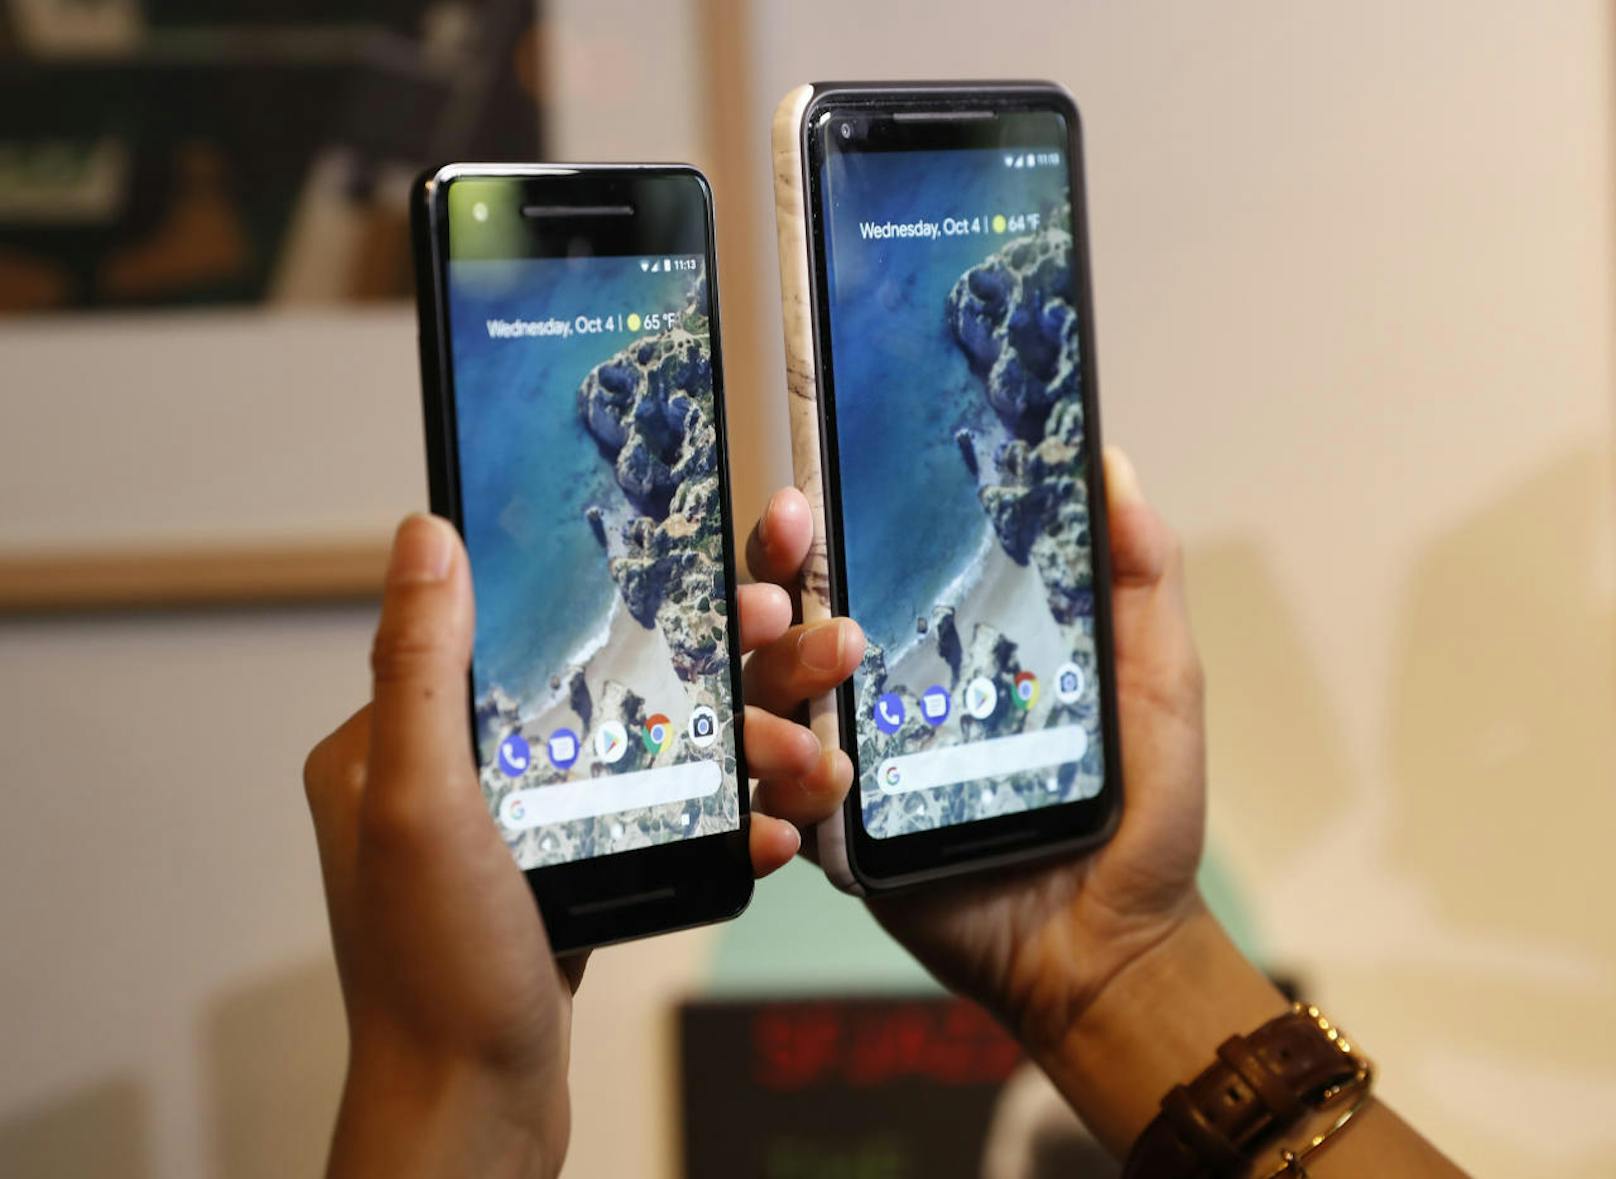 Google hat an einem Event am Mittwochabend eine ganze Reihe neuer Produkte vorgestellt. Der Star des Abends war das neue Pixel-Smartphone. Das Gerät gibt es in zwei Größen: das Pixel 2 und das Pixel 2 XL.